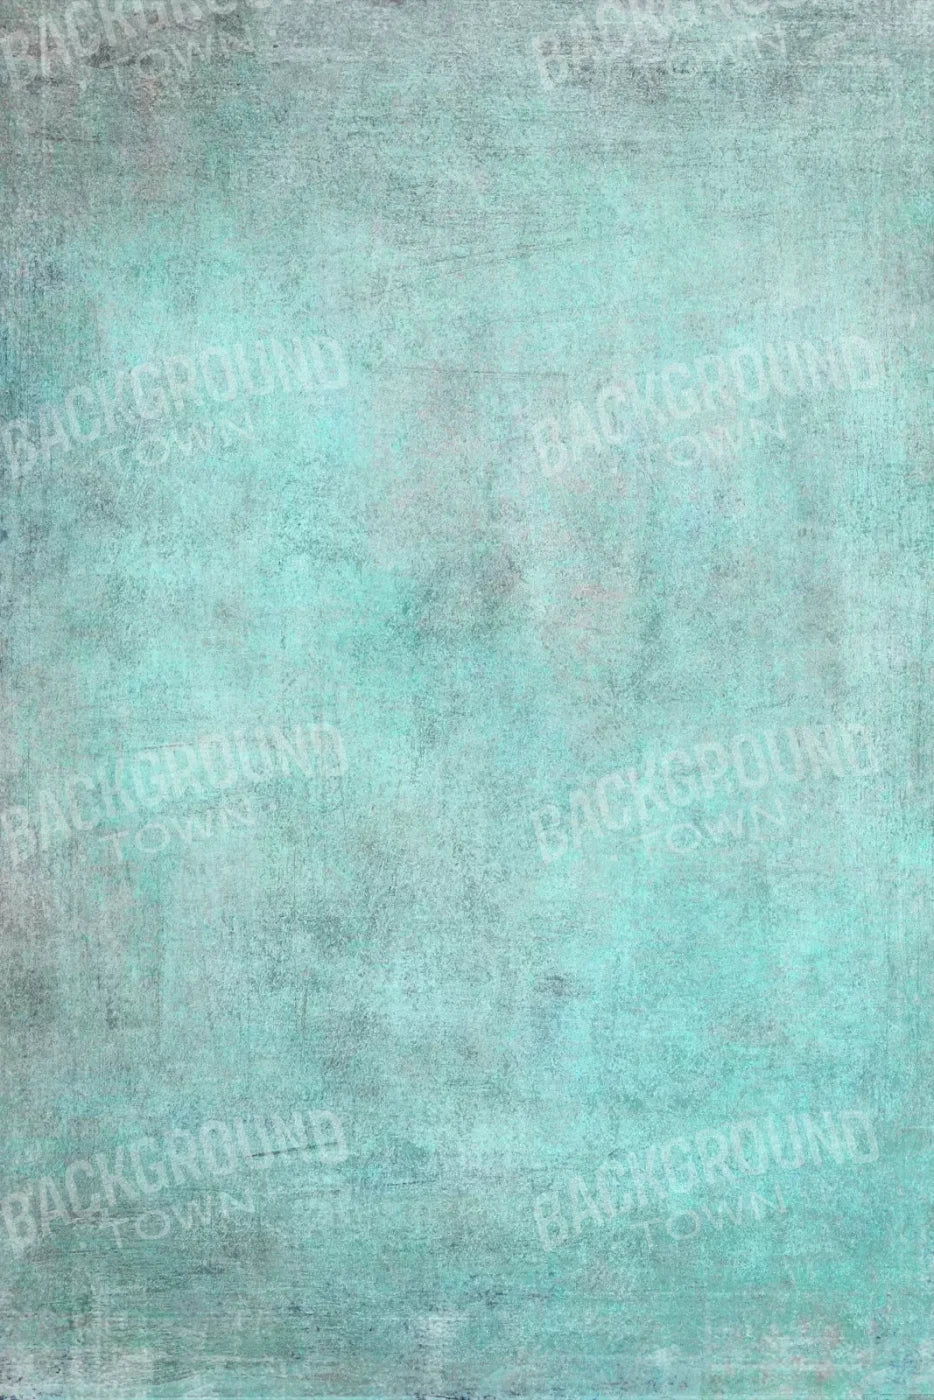 Grunge Seafoam 5X8 Ultracloth ( 60 X 96 Inch ) Backdrop